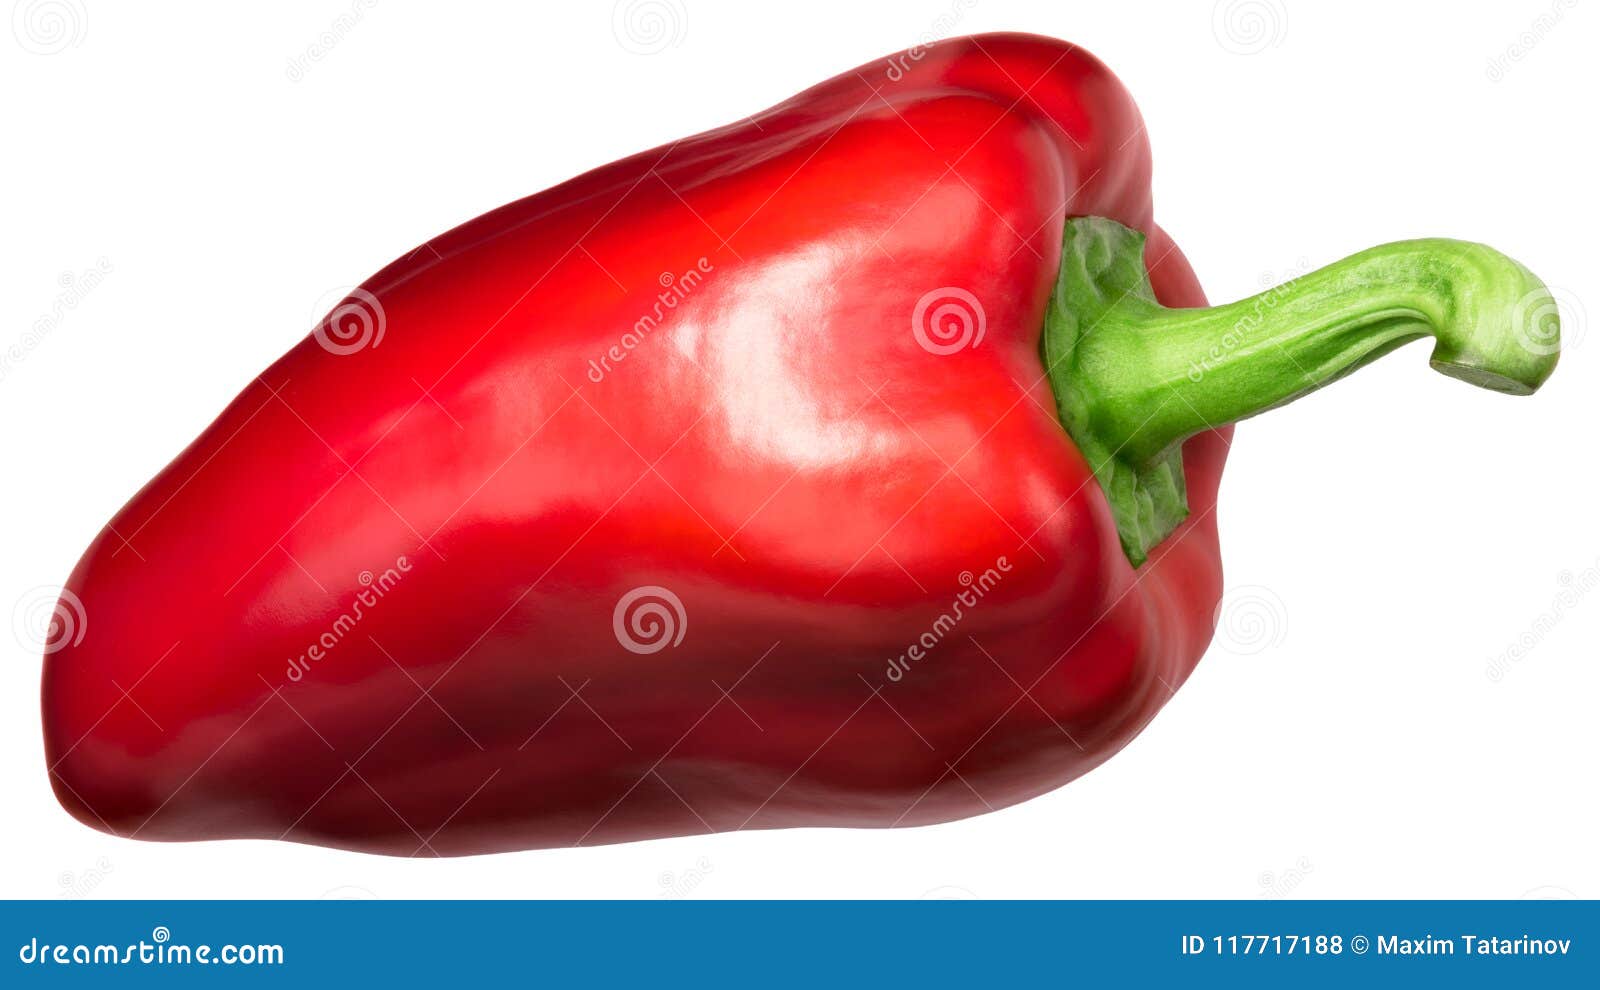 red bell pepper grueso de plaza, top